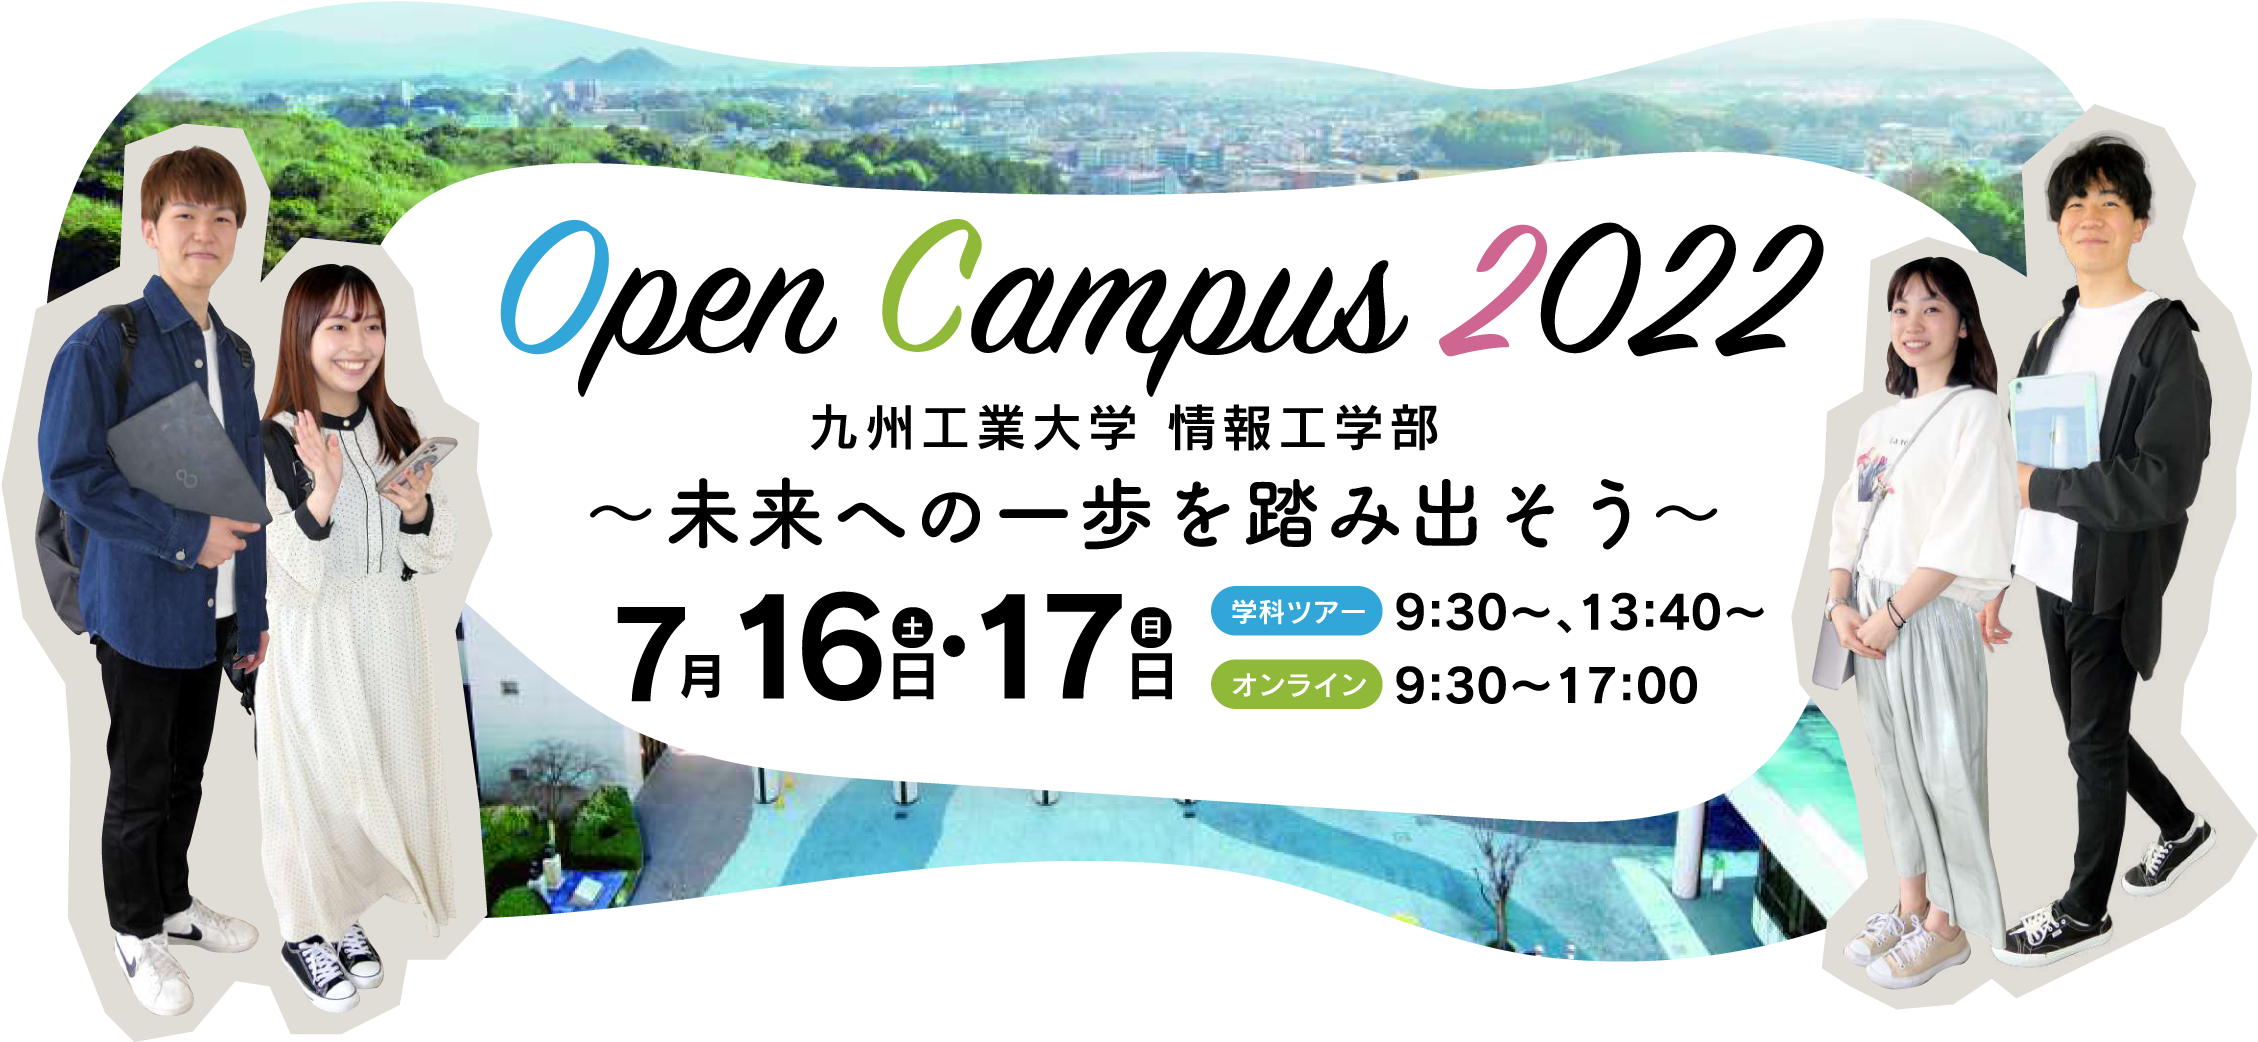 九州工業大学 情報工学部 オープンキャンパス2022